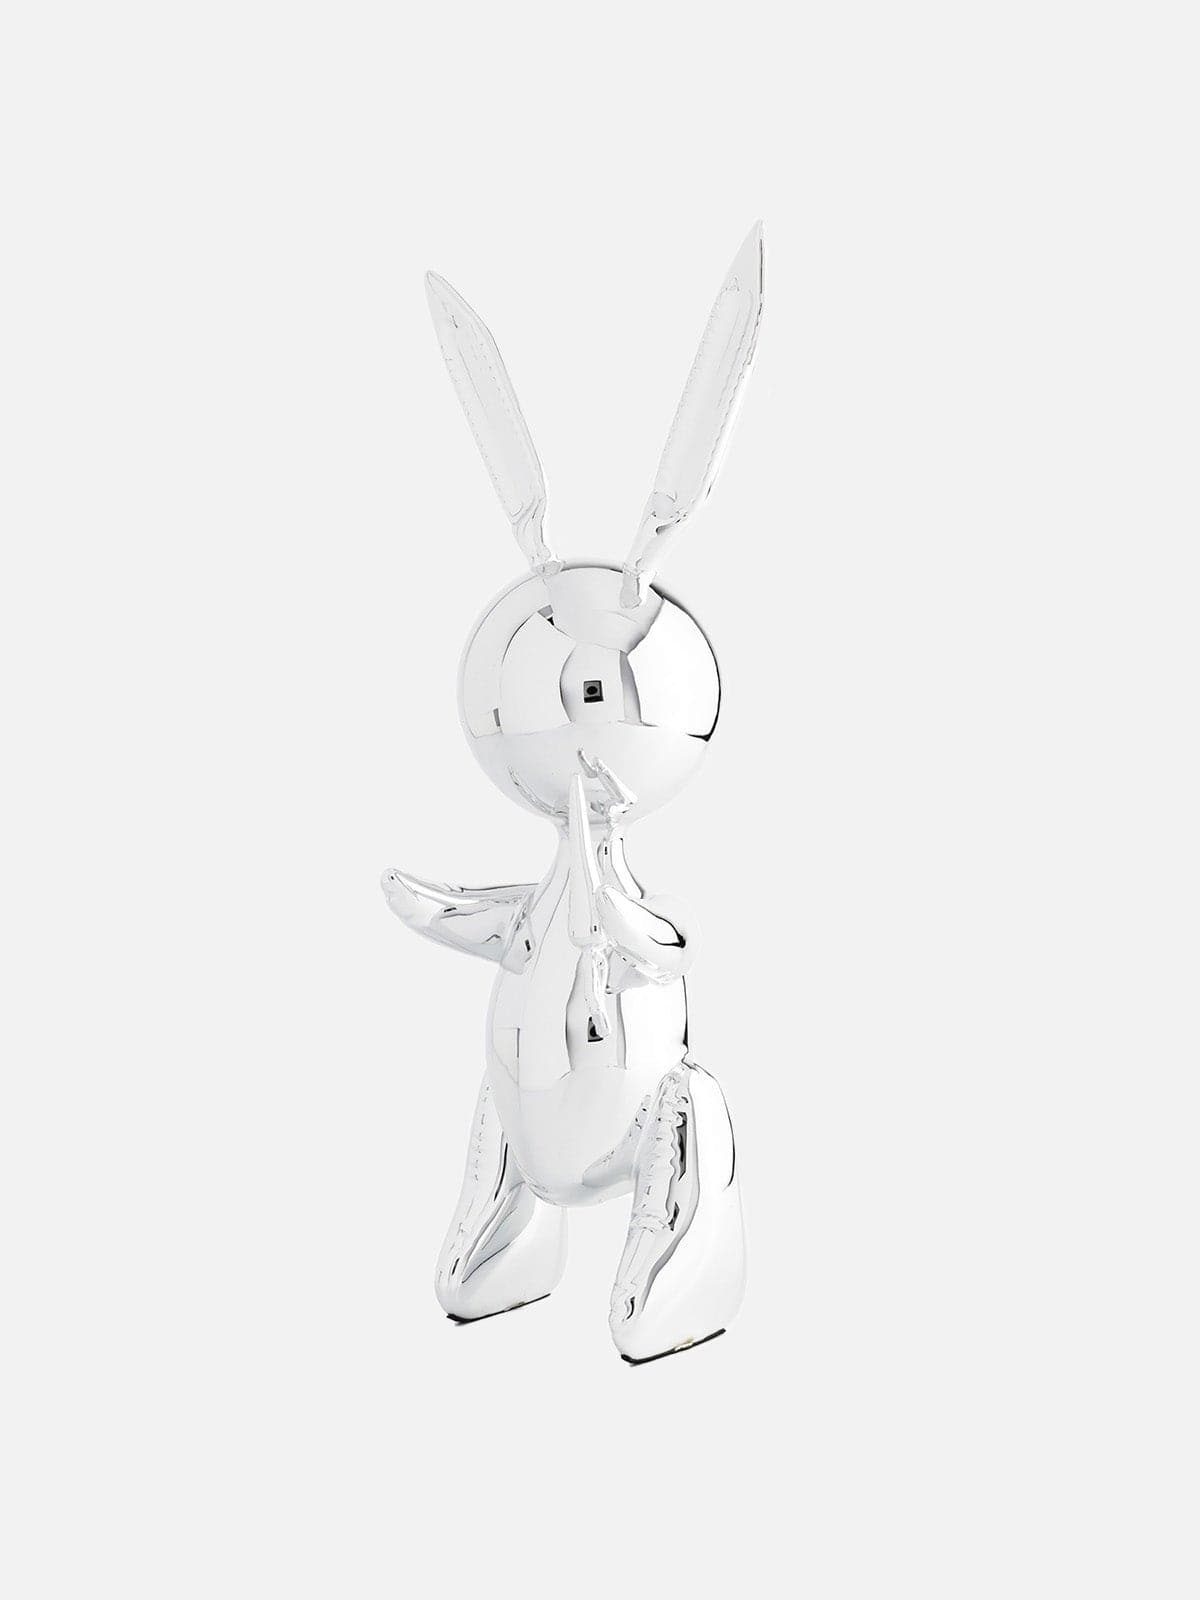 Jeff Koons, Balloon Rabbit XL